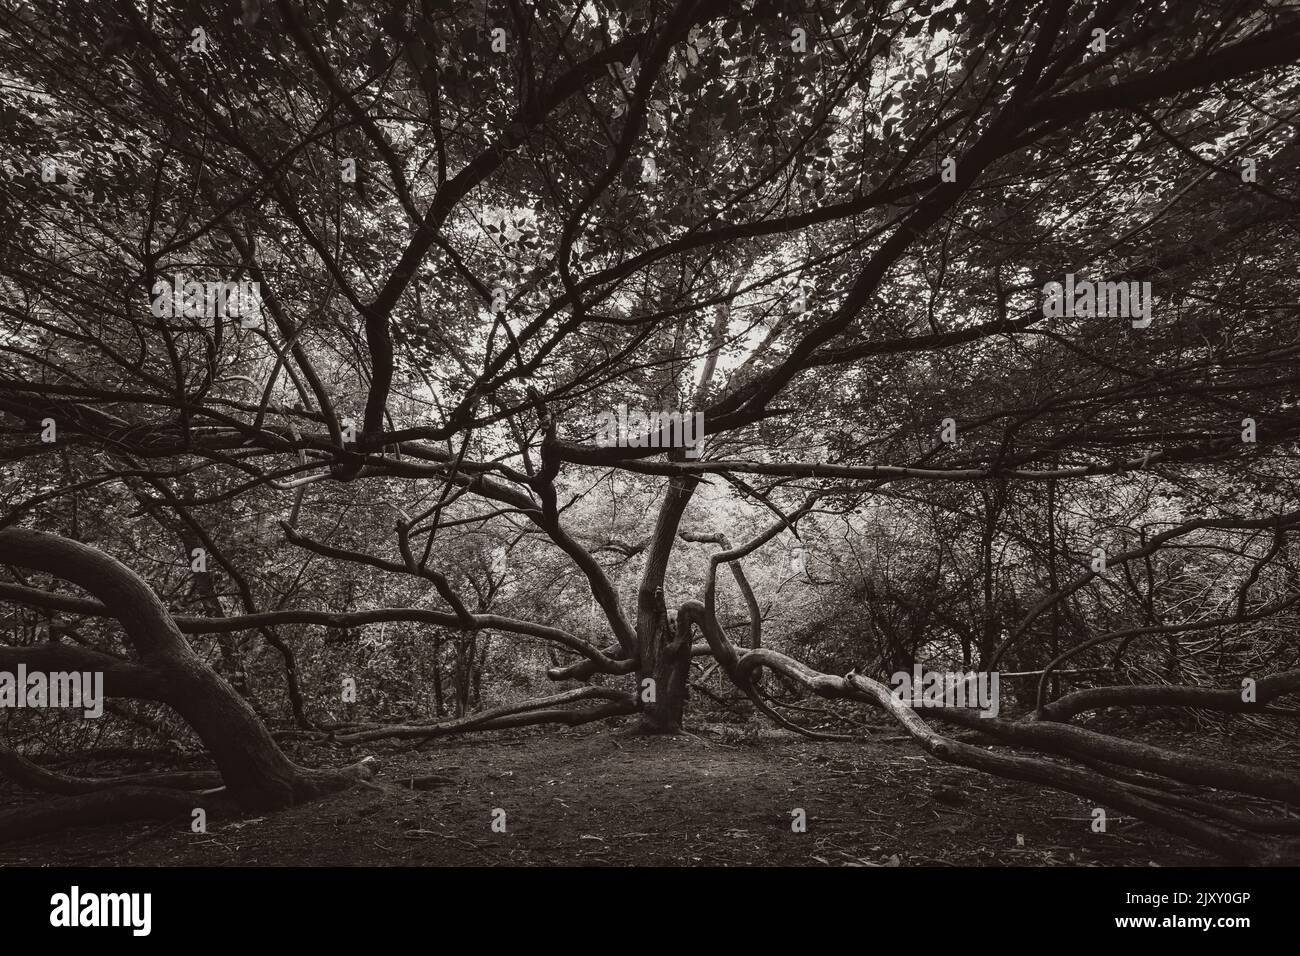 un arbre crocheté et crocheté, un arbre sorcière en été, un bel arbre unique, photo en noir et blanc Banque D'Images